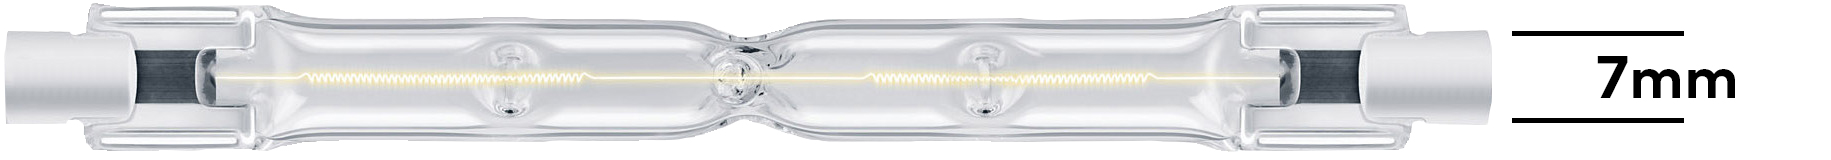 Typische Halogenlampe. Der Anschluss ist 7 mm breit, deshalb der Name R7.